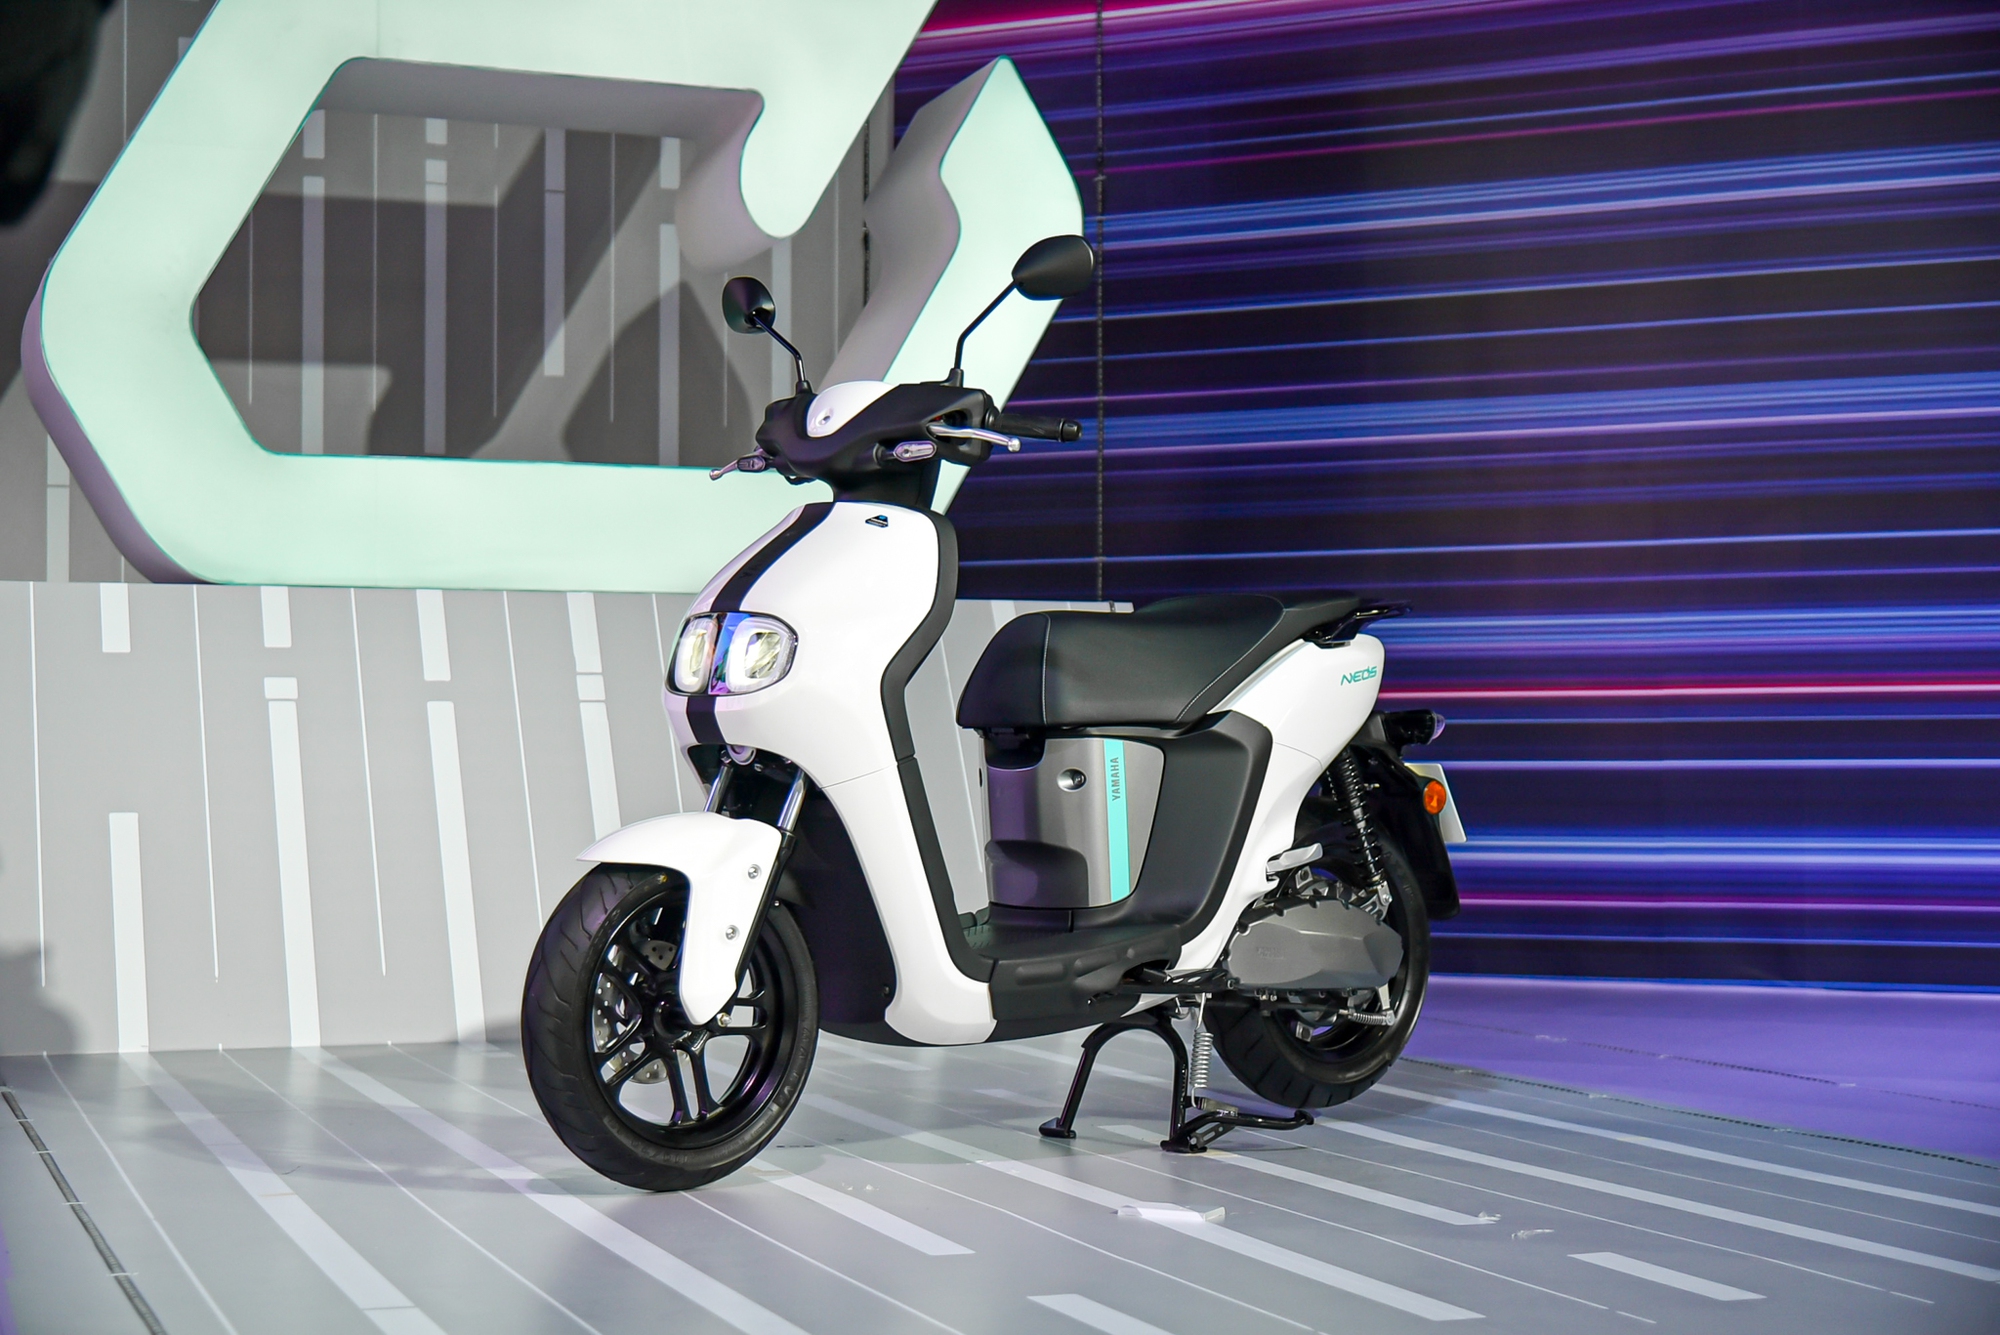 Yamaha Neo's ra mắt Việt Nam: Giá 50 triệu đồng, có thể đi tối đa 144 km, cạnh tranh VinFast Vento S - Ảnh 1.